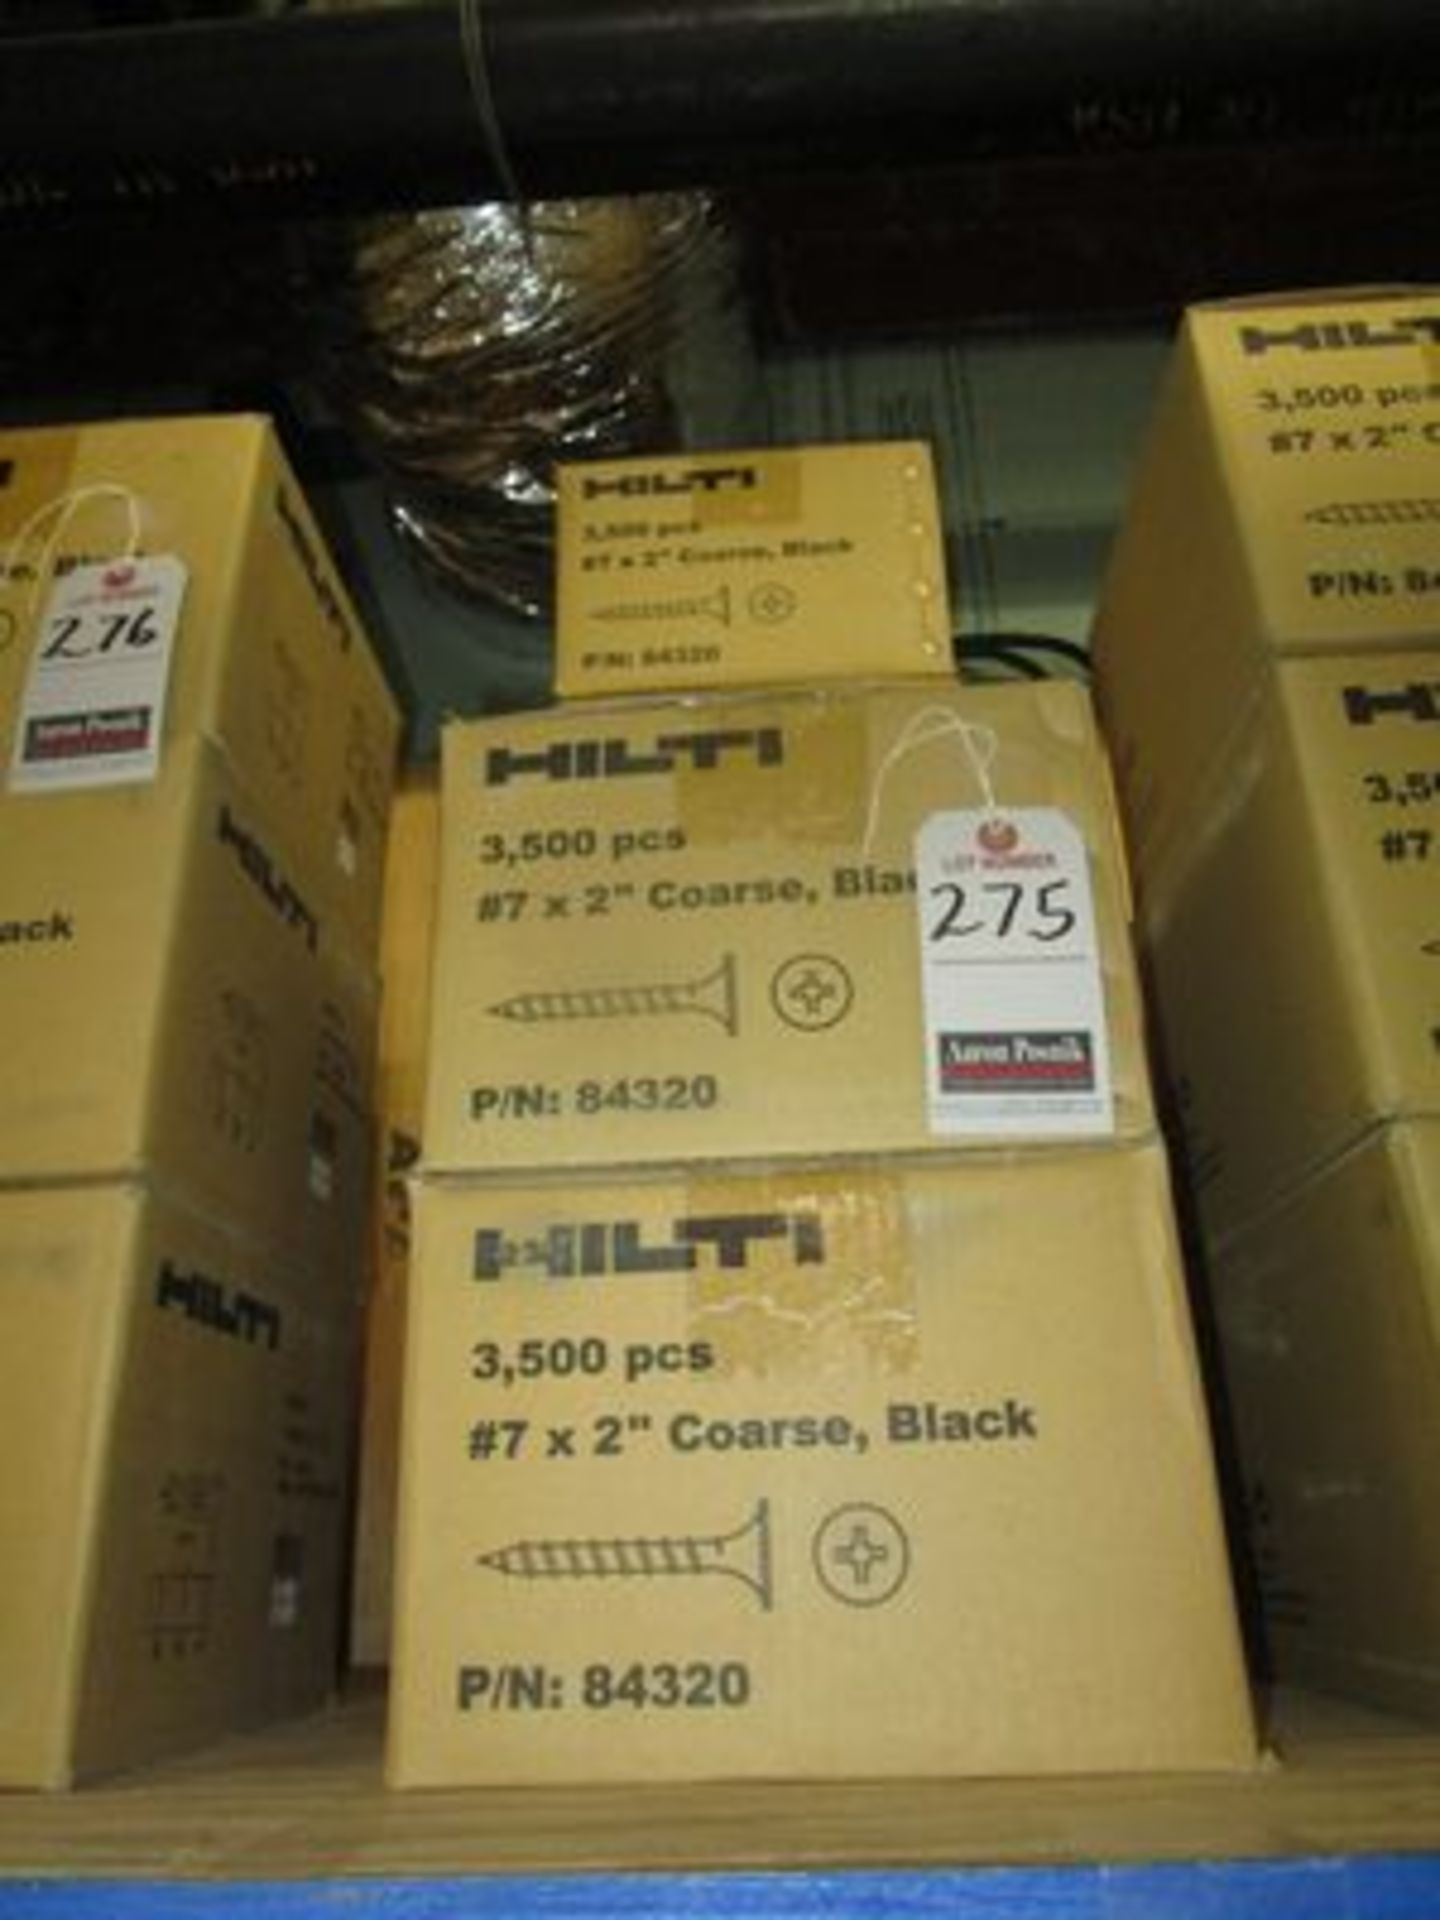 BX.'S HILTI 2" COARSE BLACK SCREWS, 3,500 PER BOX